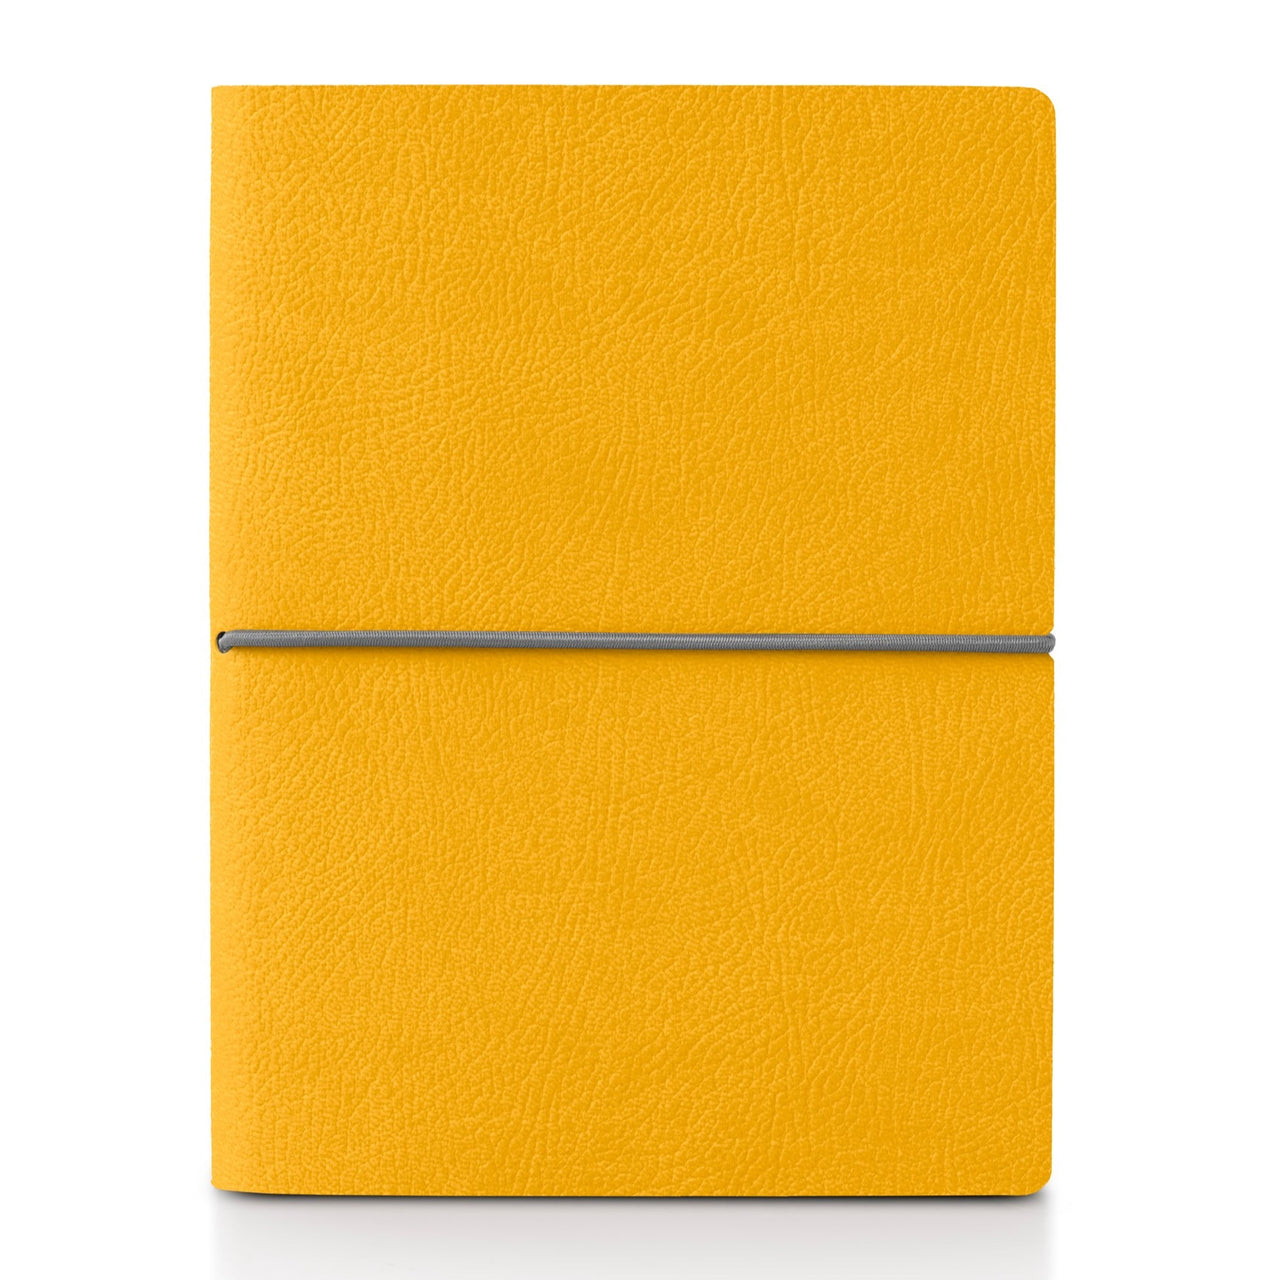 Ciak Smart Notebook - Yellow